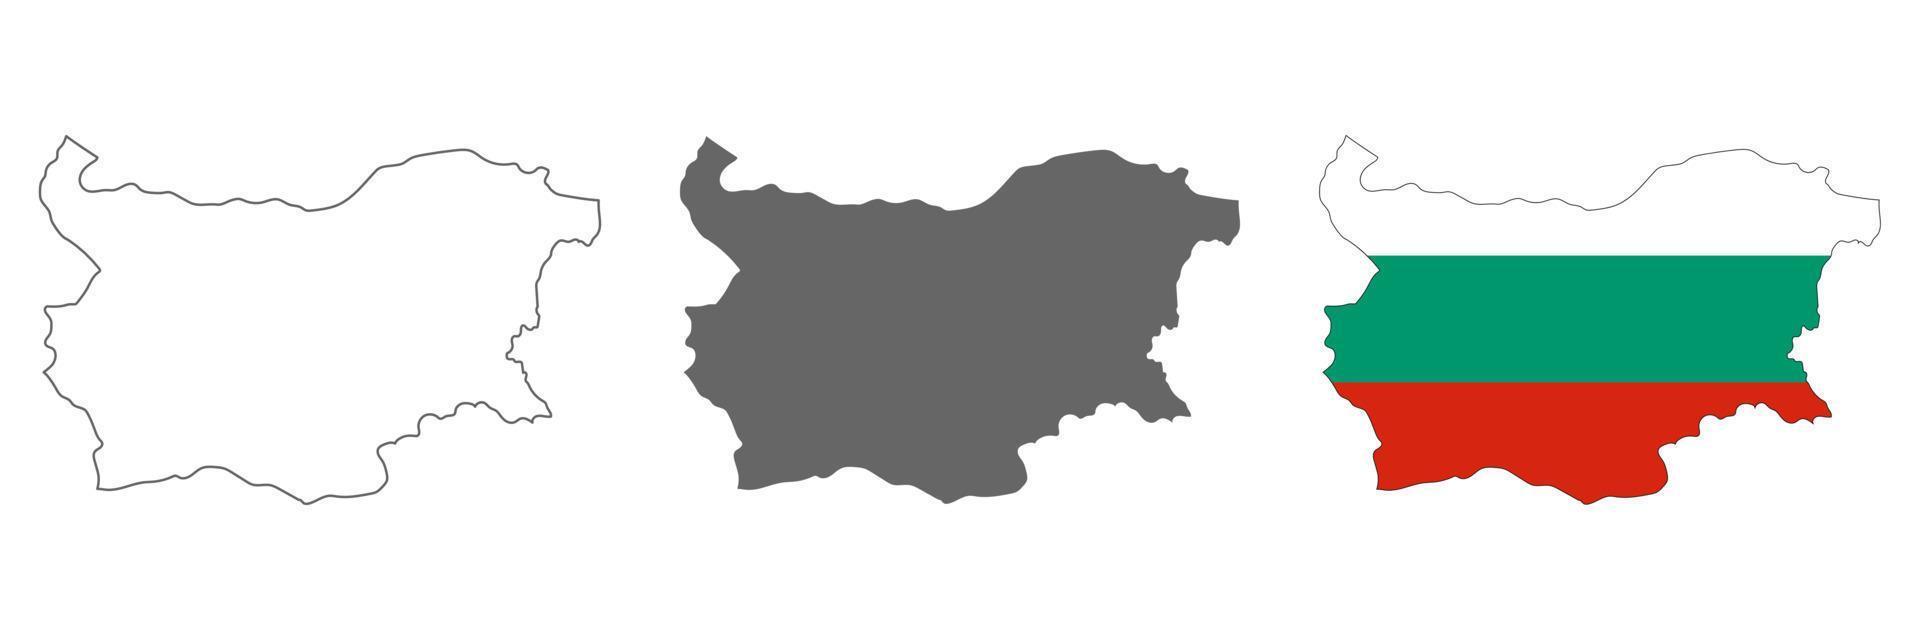 zeer gedetailleerde kaart van bulgarije met randen geïsoleerd op de achtergrond vector